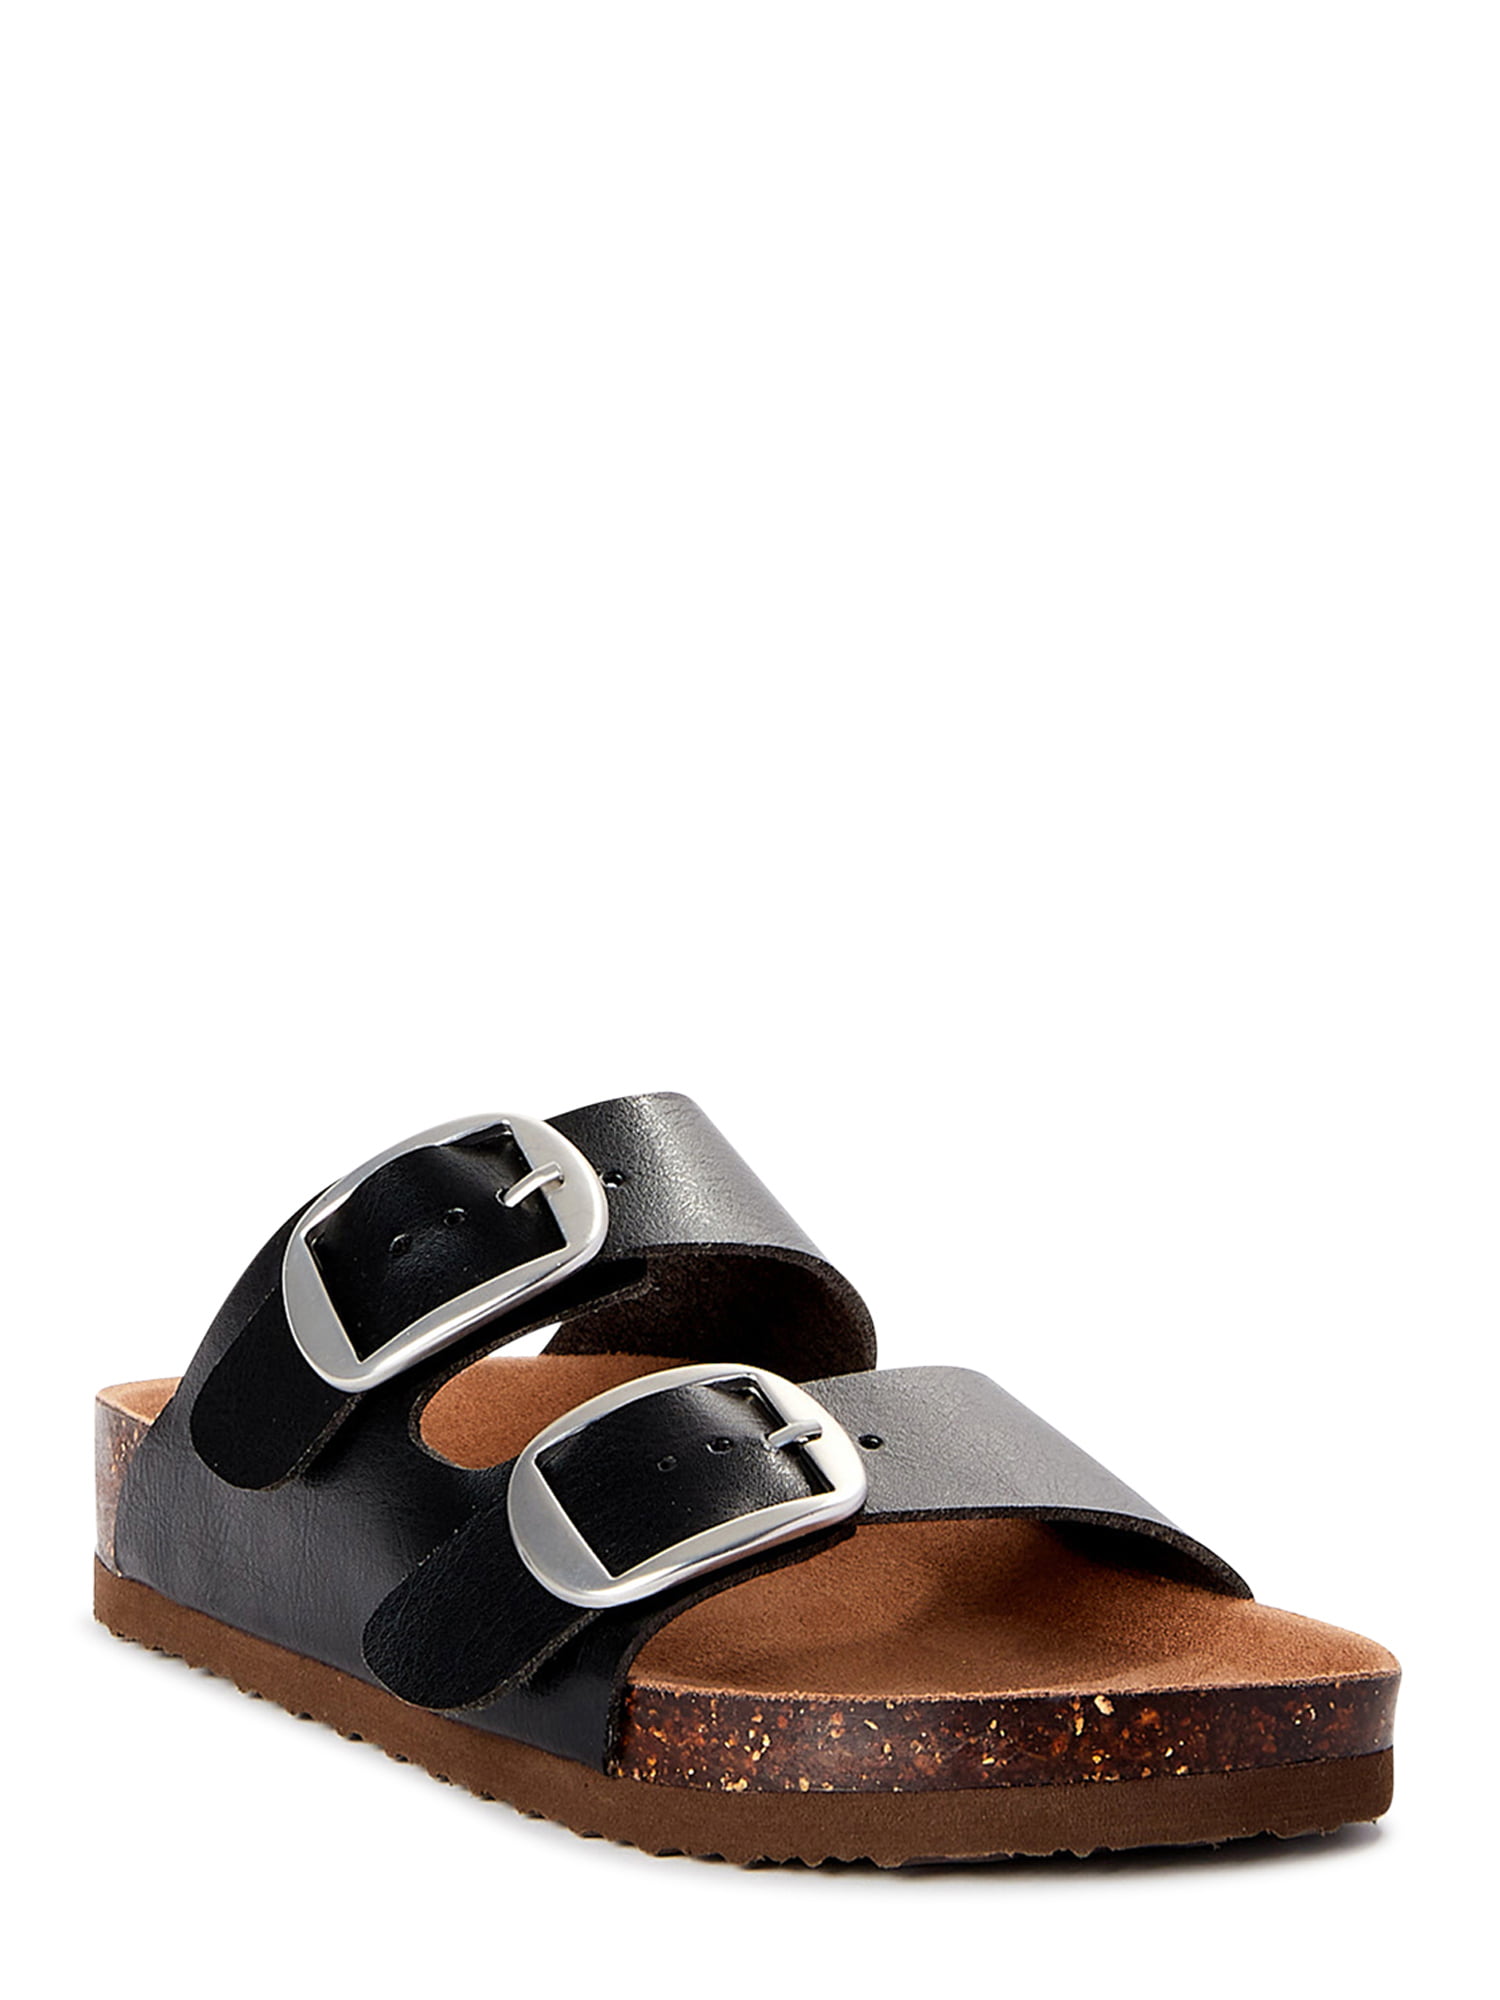 LADIES HALTER BACK Adjustable Sandals Black Taupe Navy Grey Size 3 4 5 6 7 8 